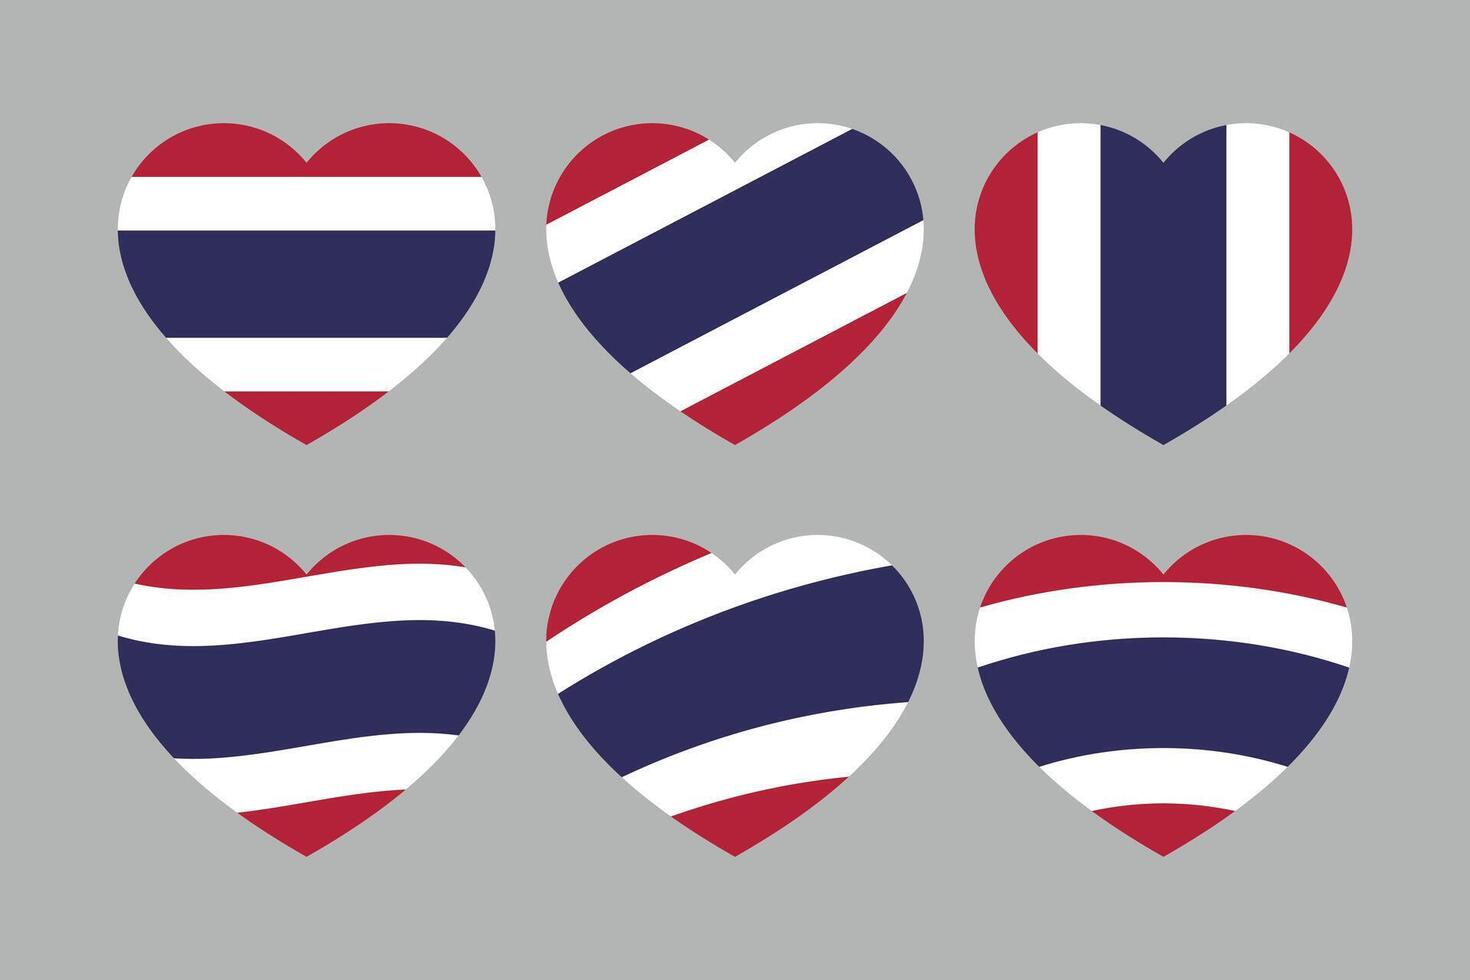 Rot, Weiß und Blau farbig Herz Symbole, wie das Farben von Thailand Flagge. eben Vektor Illustration.